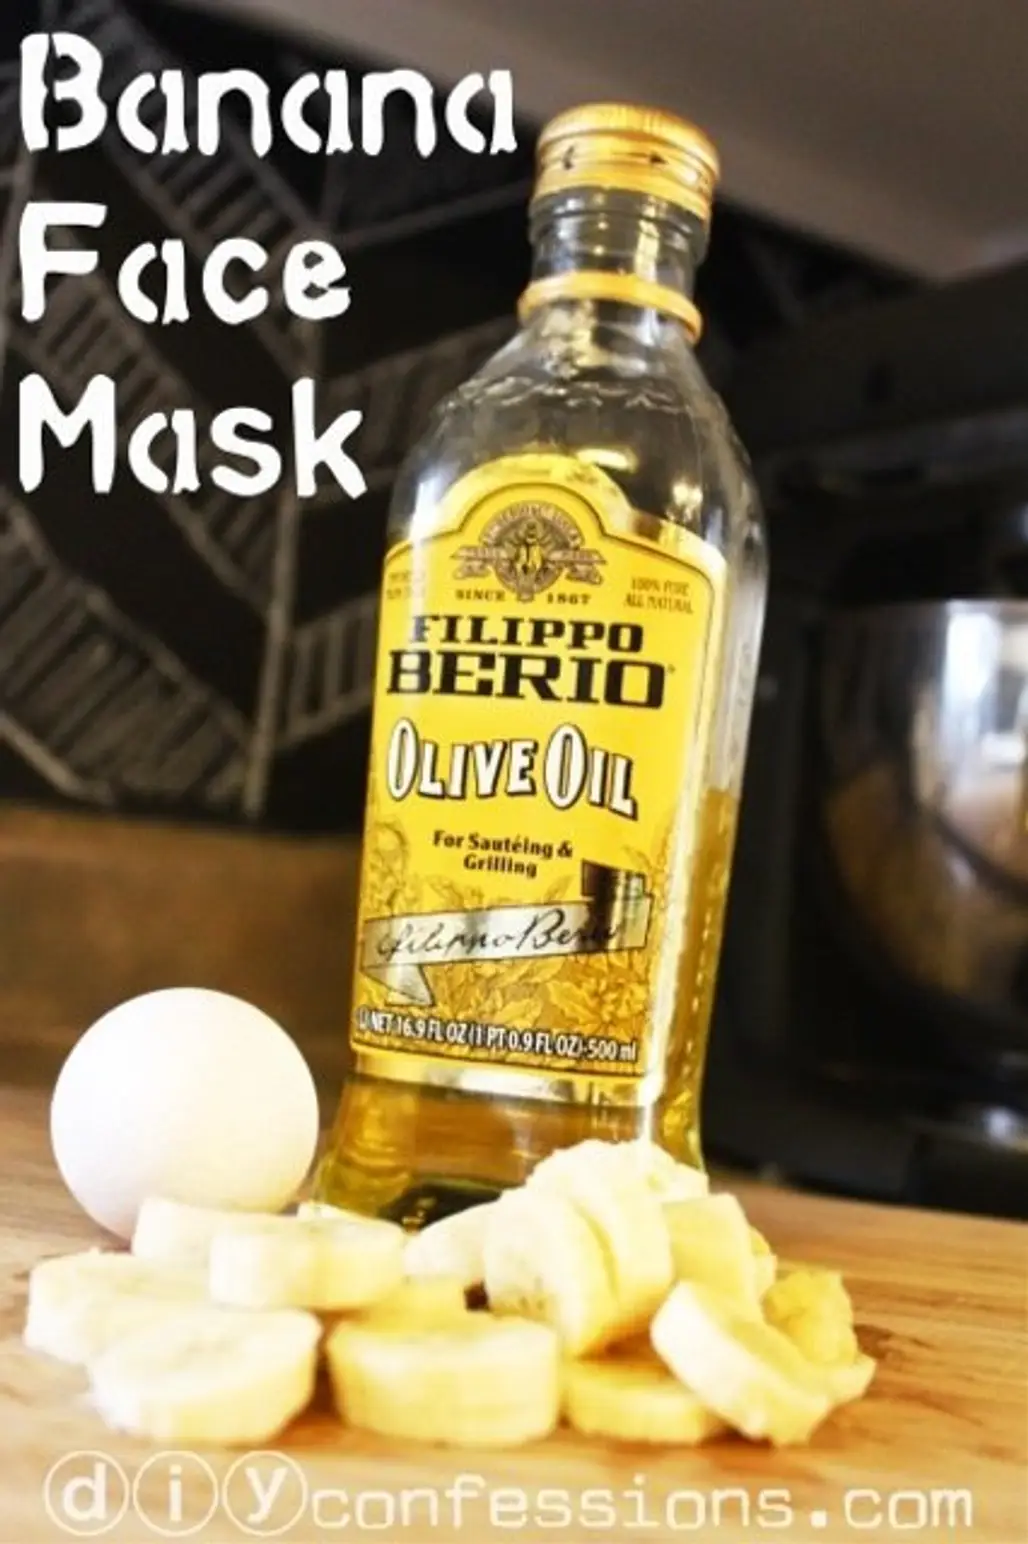 Banana Face Mask